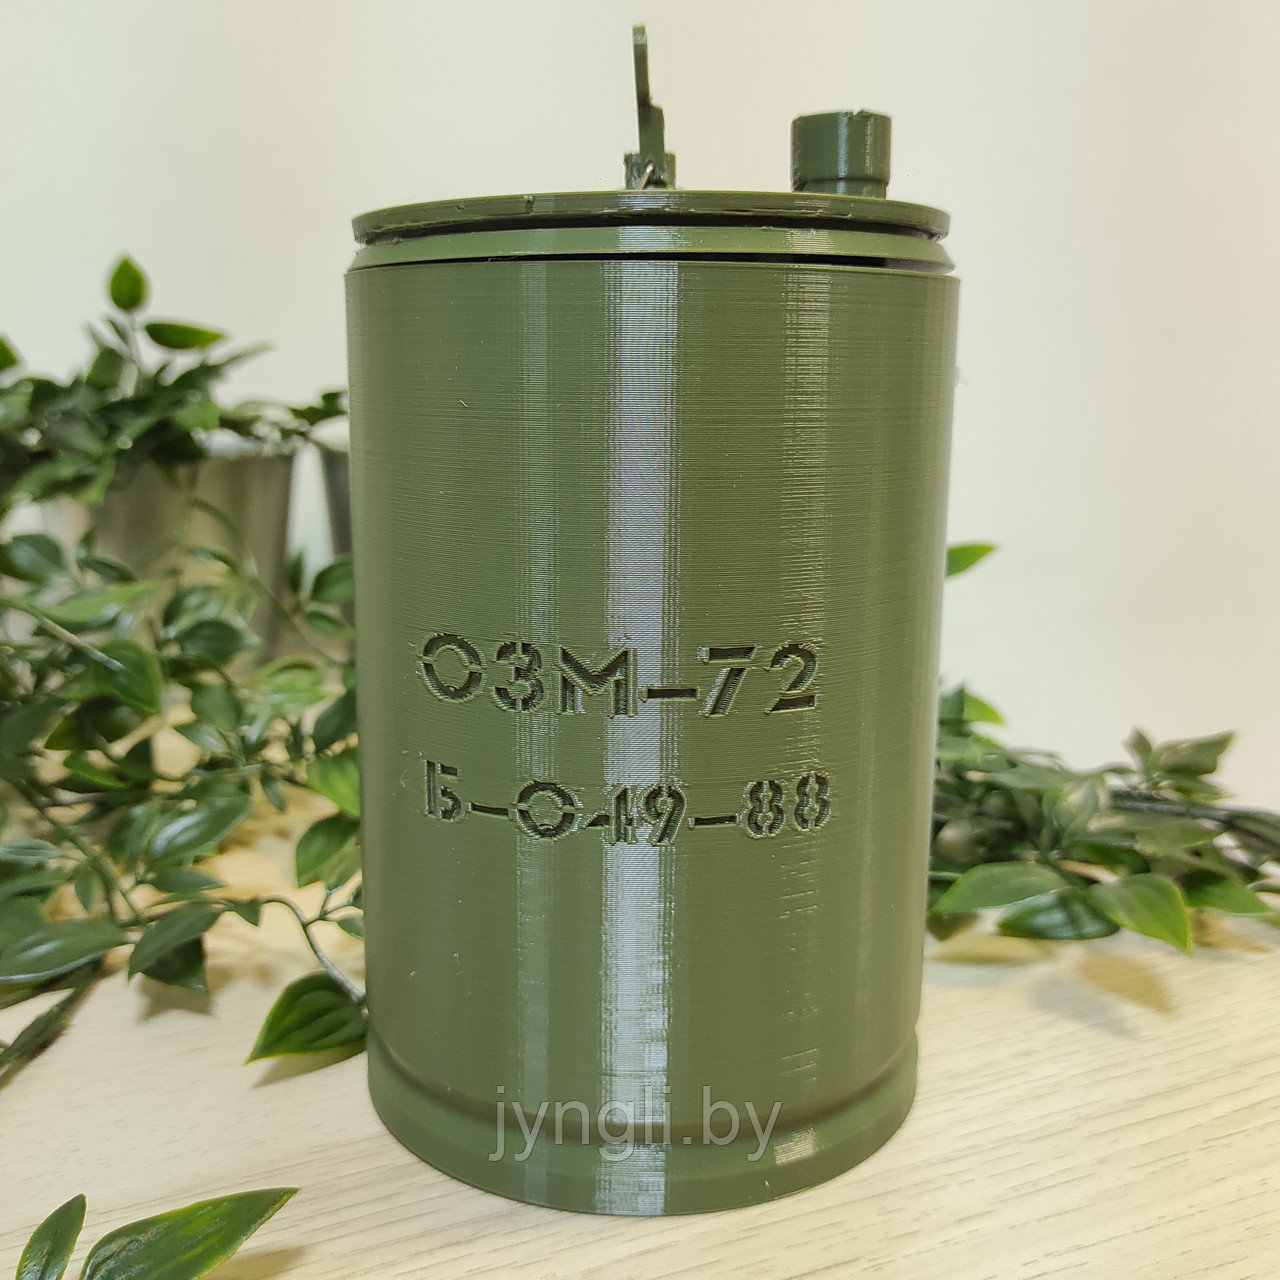 Макет мины ОЗМ-72 "ВЕДЬМА" (хаки)